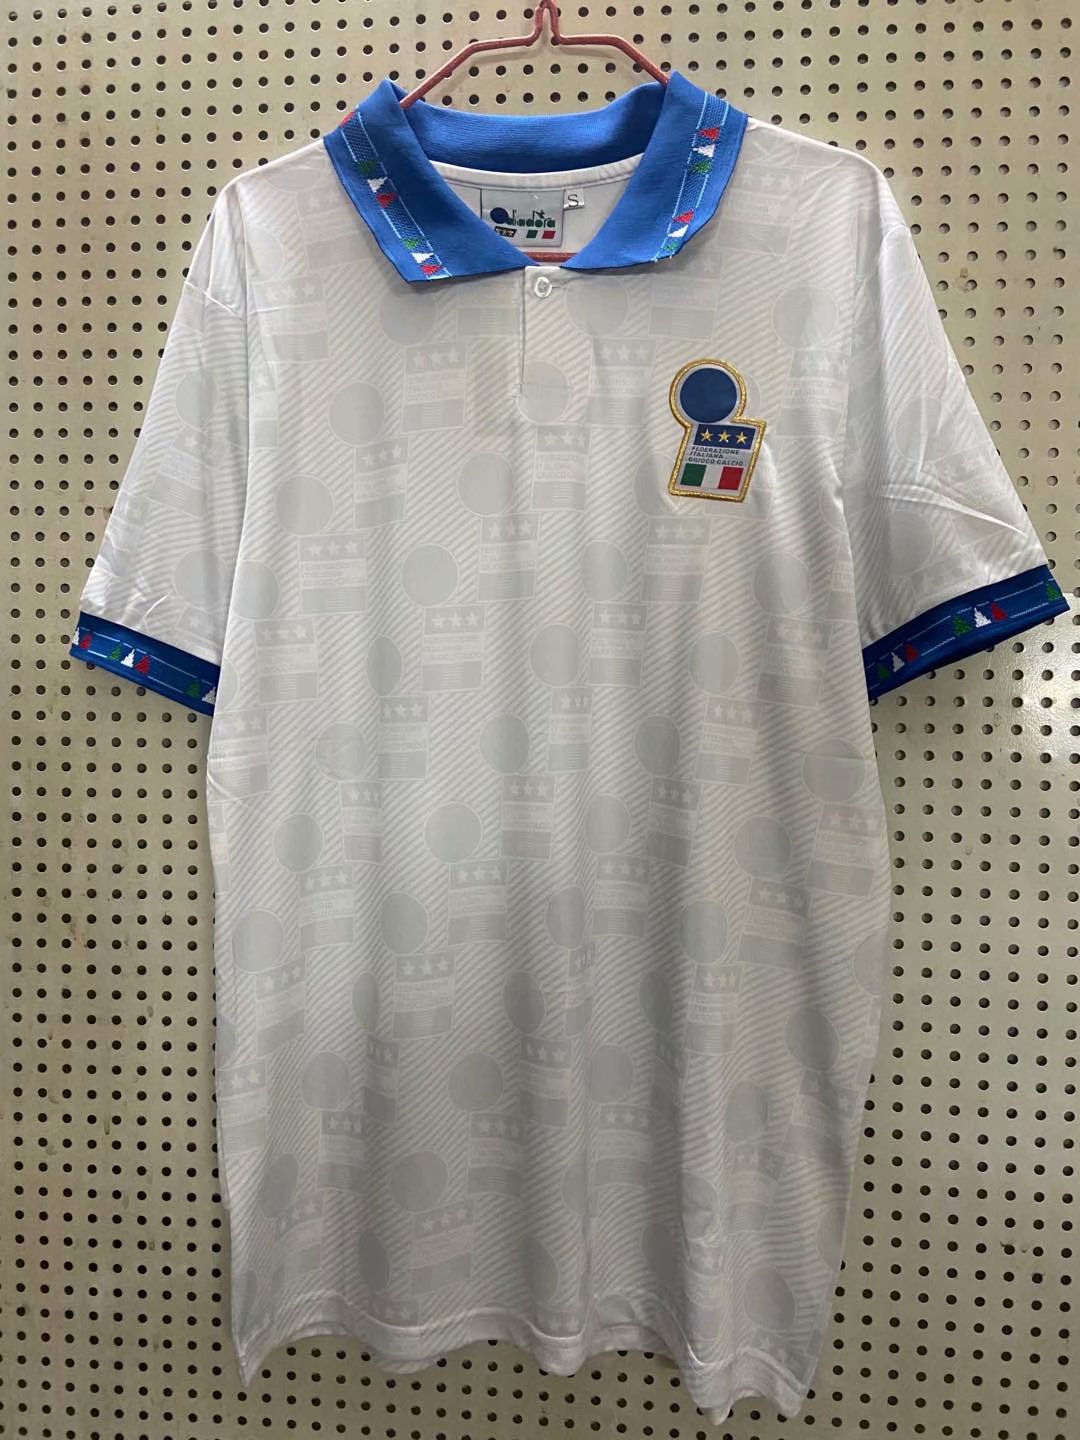 1994 away shirt